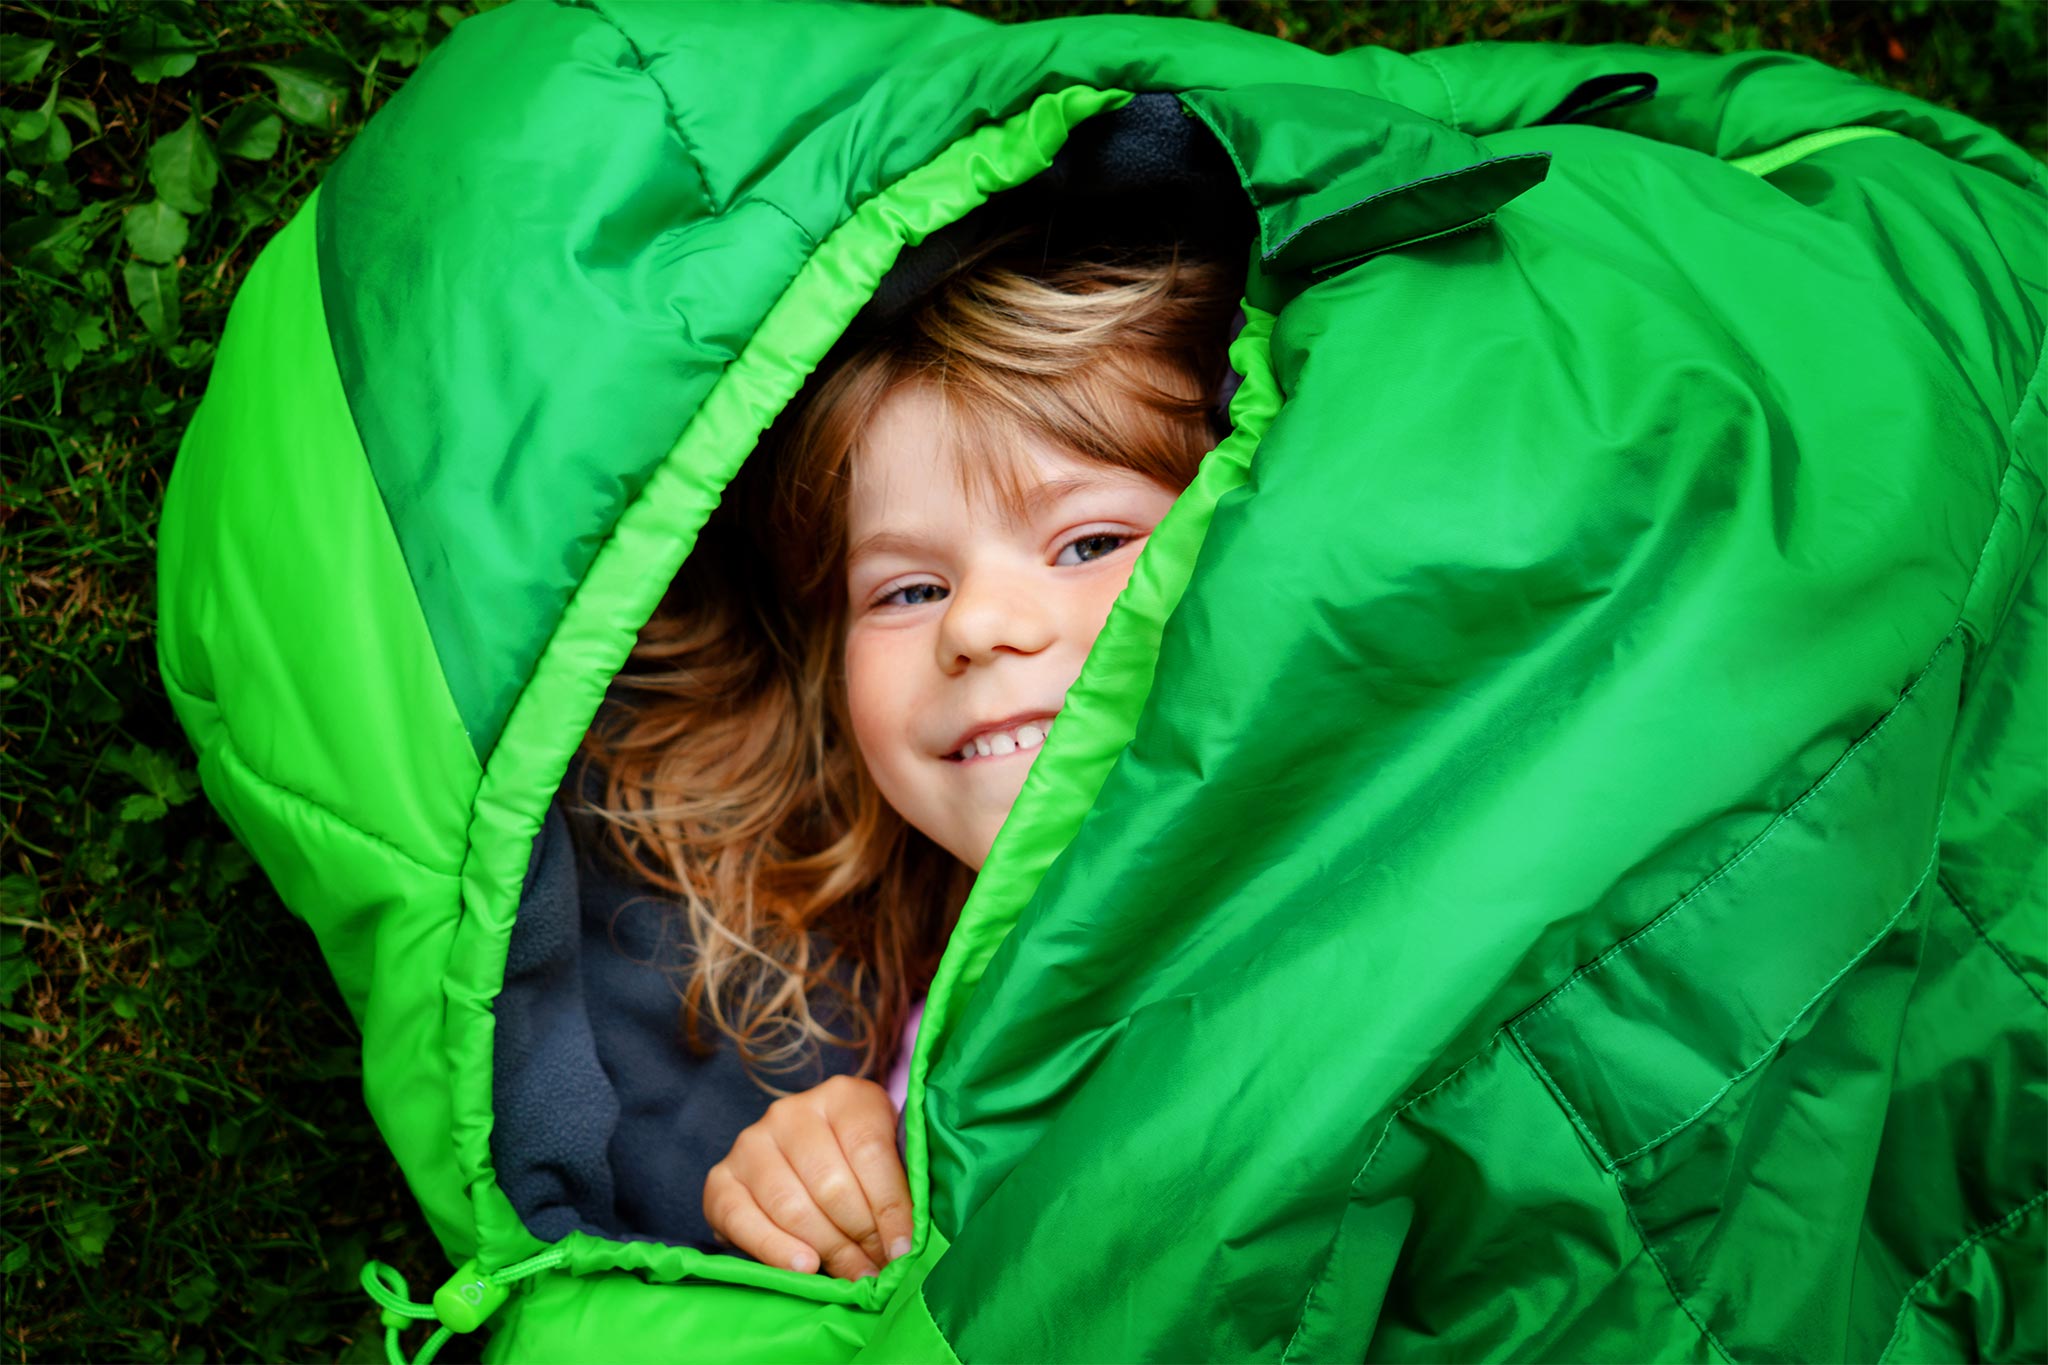 A kid in a sleeping bag